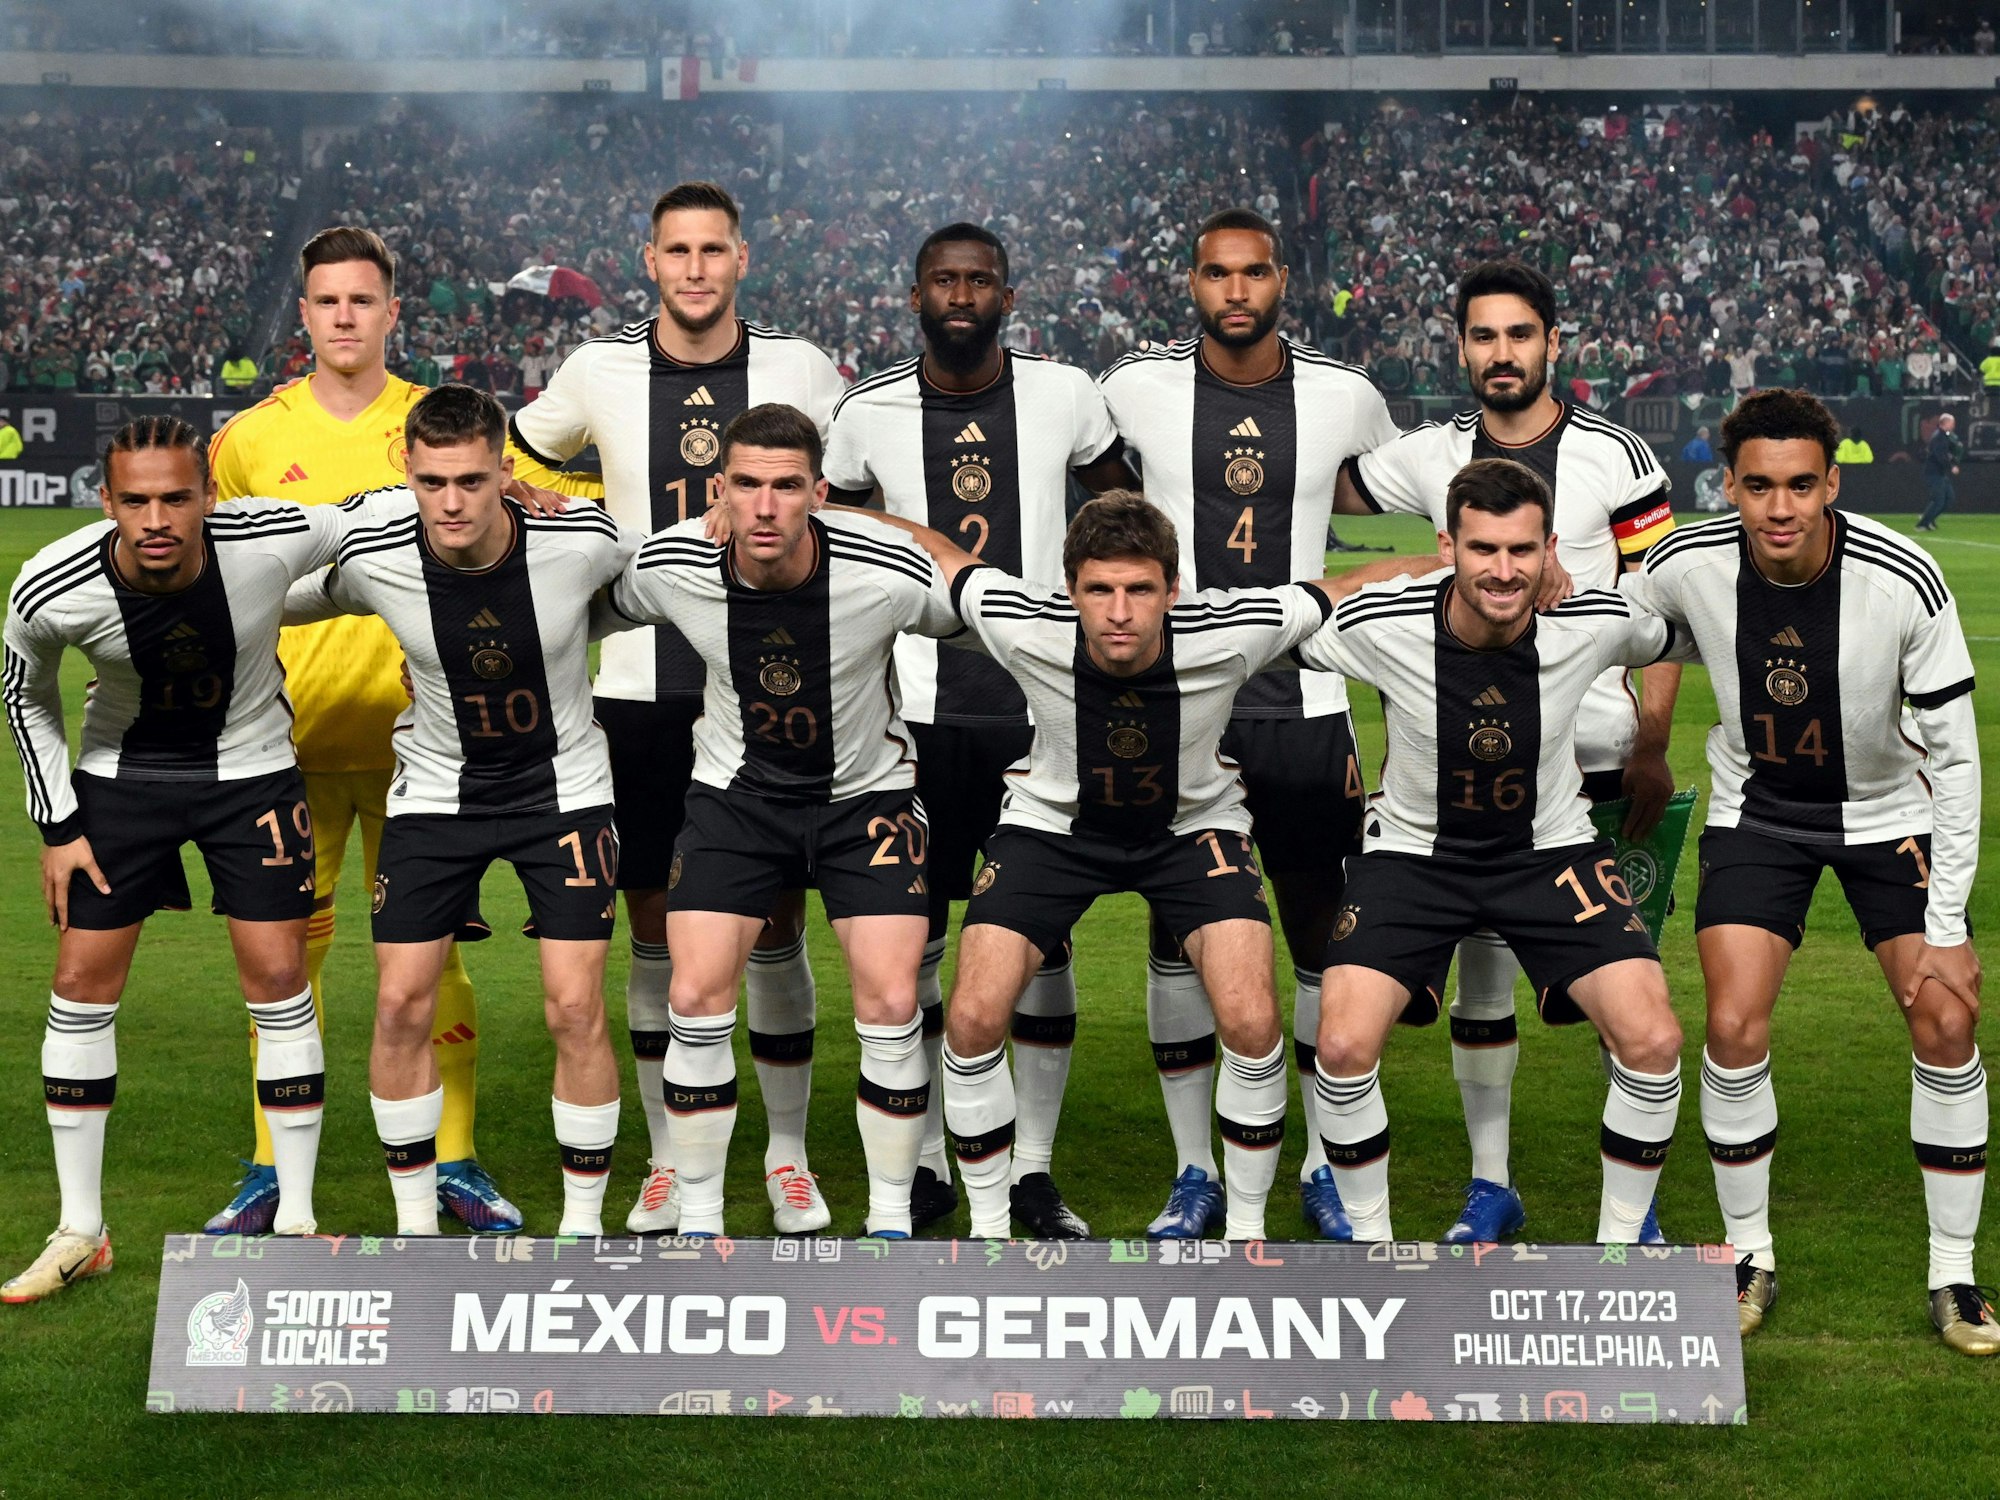 Die deutschen Spieler haben vor dem Spiel Aufstellung für ein Teambild genommen.